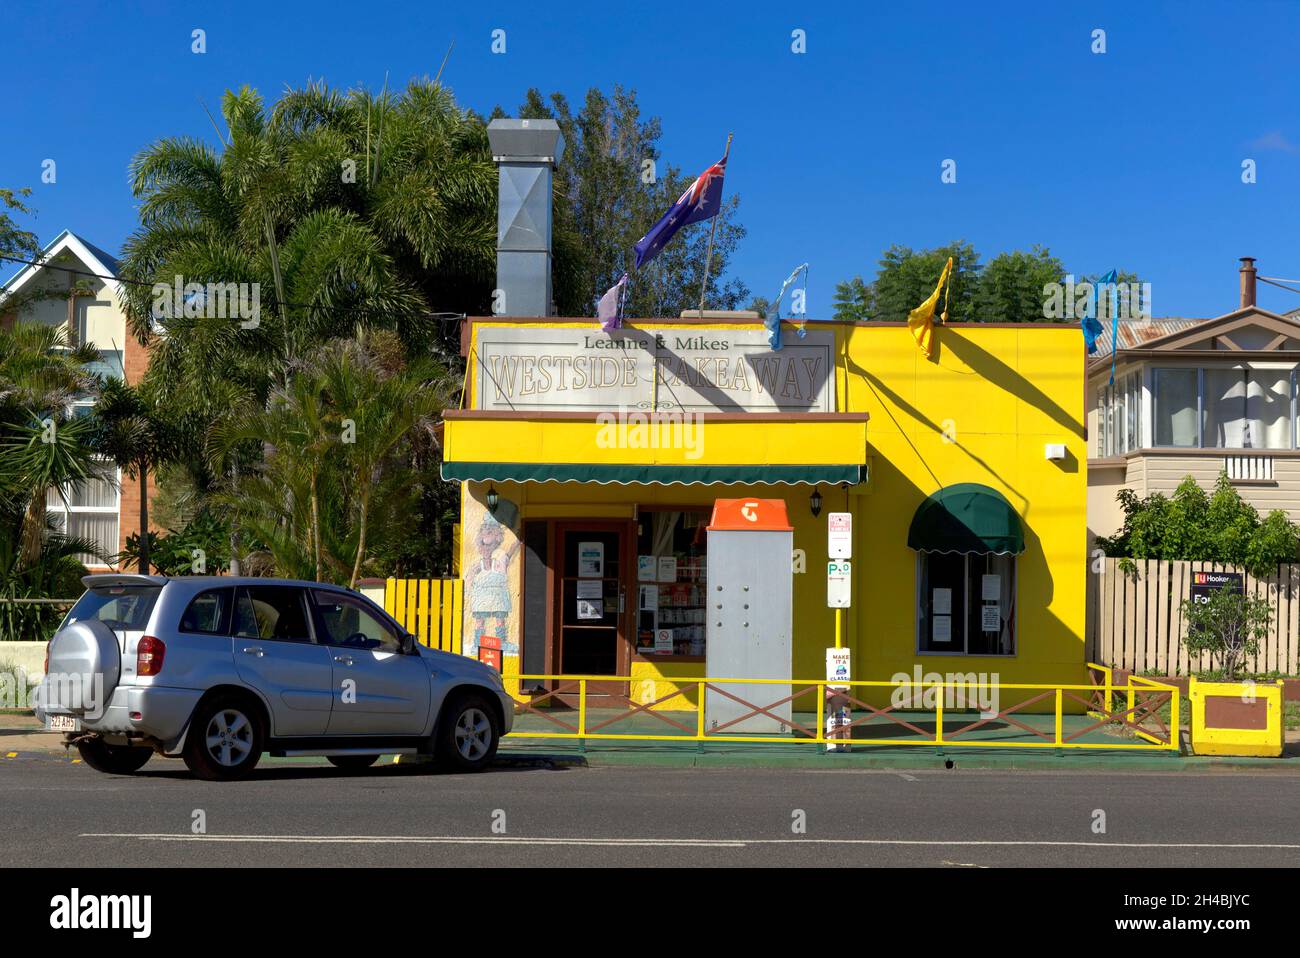 Leanne und Mikes Takeaway Shop bilden einen farbenfrohen Teil der Straßenlandschaft der Meson Street Gayndah Queensland Australia Stockfoto